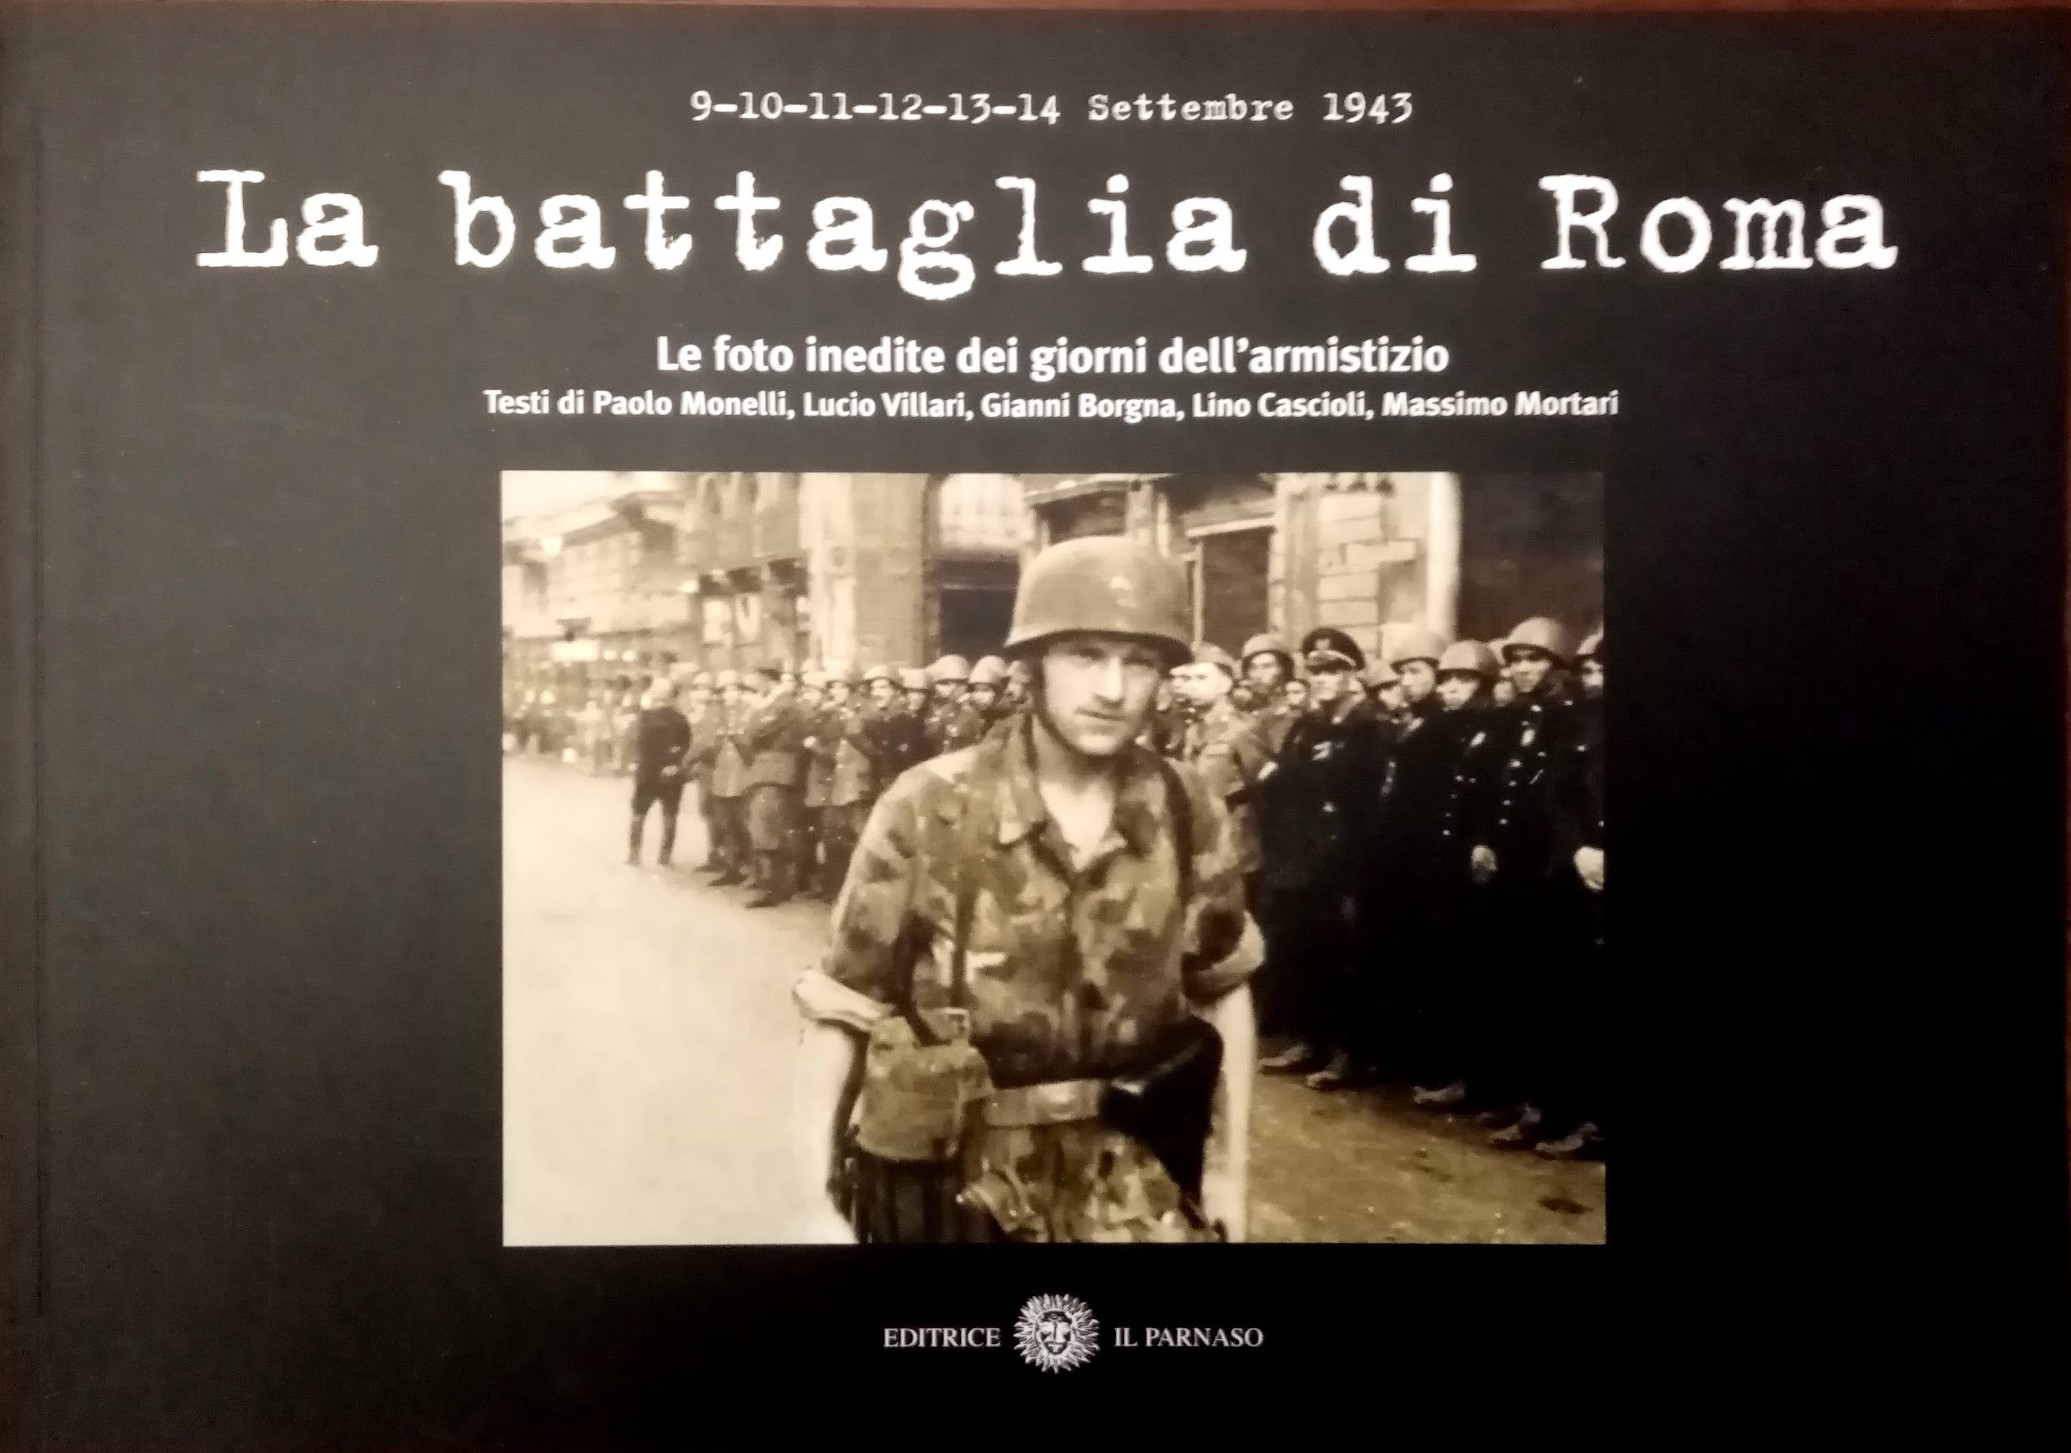 A caccia di “La battaglia di Roma” (2004): importante e recente ma scomparso